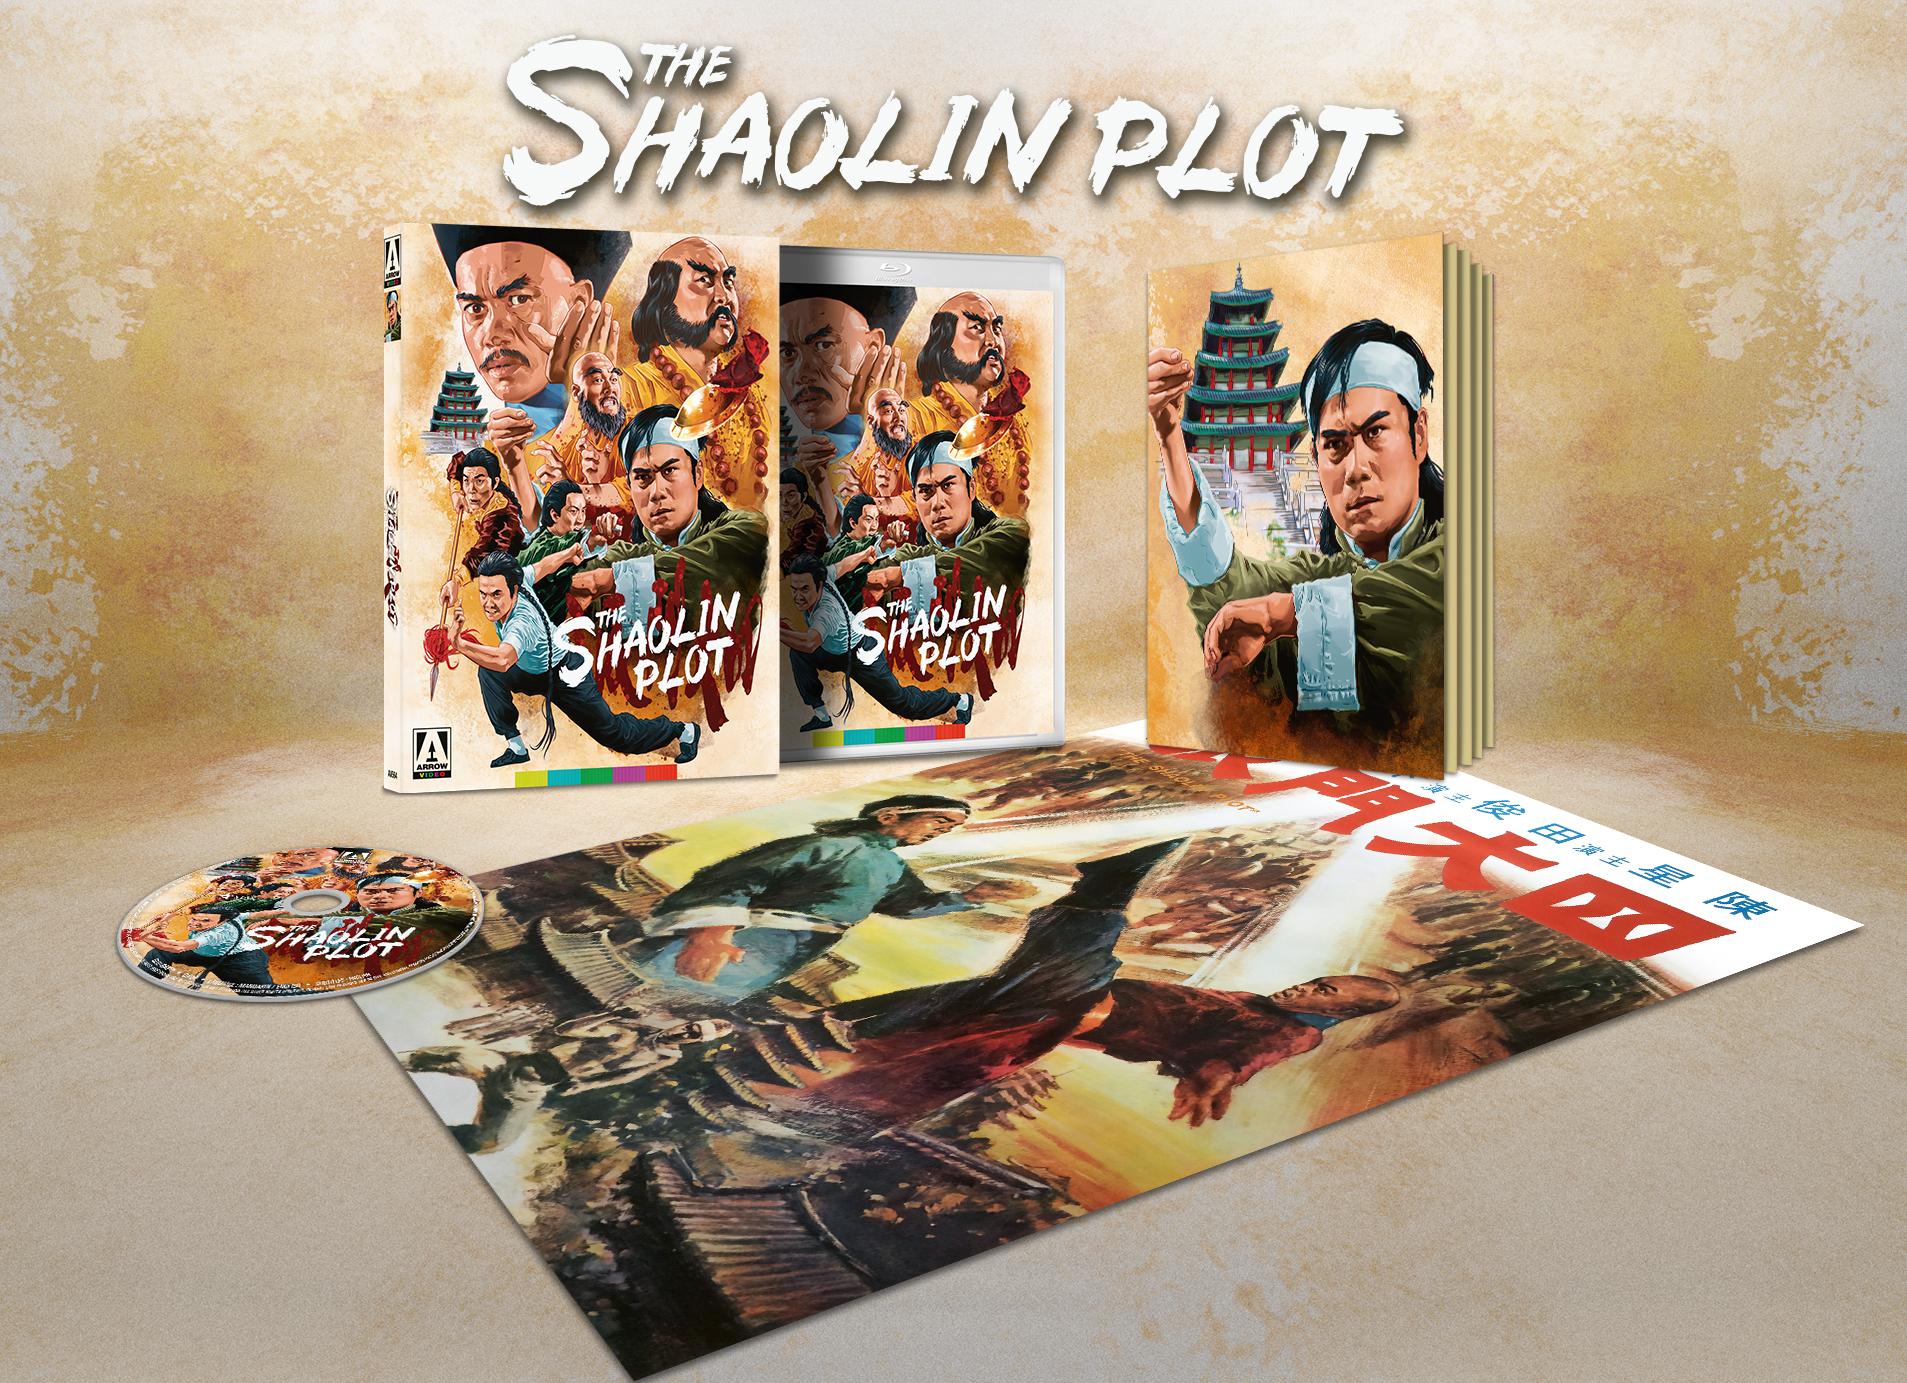 The Shaolin Plot | Blu-ray (Arrow)